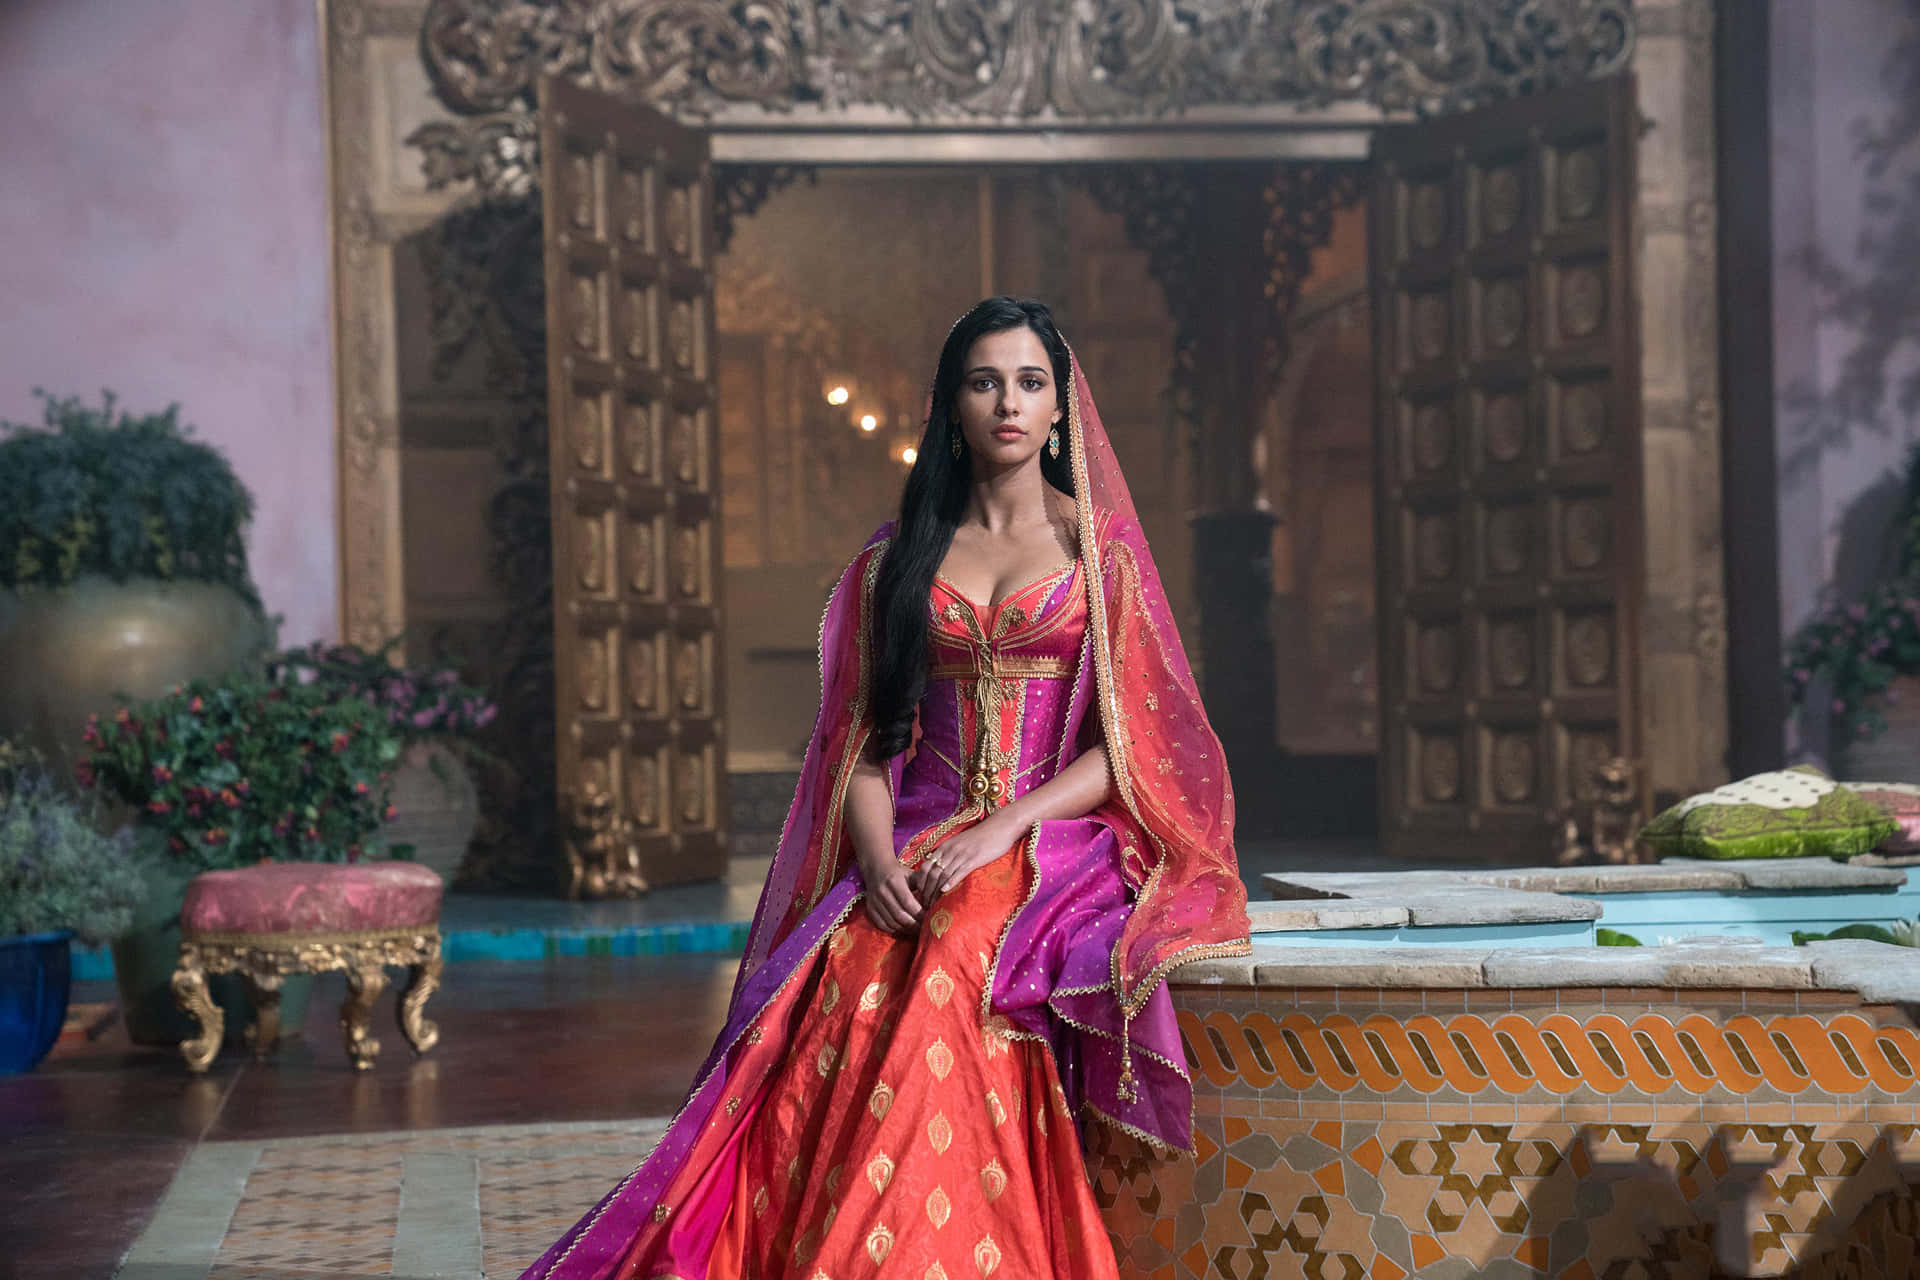 Jasmineoch Aladdin Delar En Romantisk Stund På Marknaden I Agrabah.